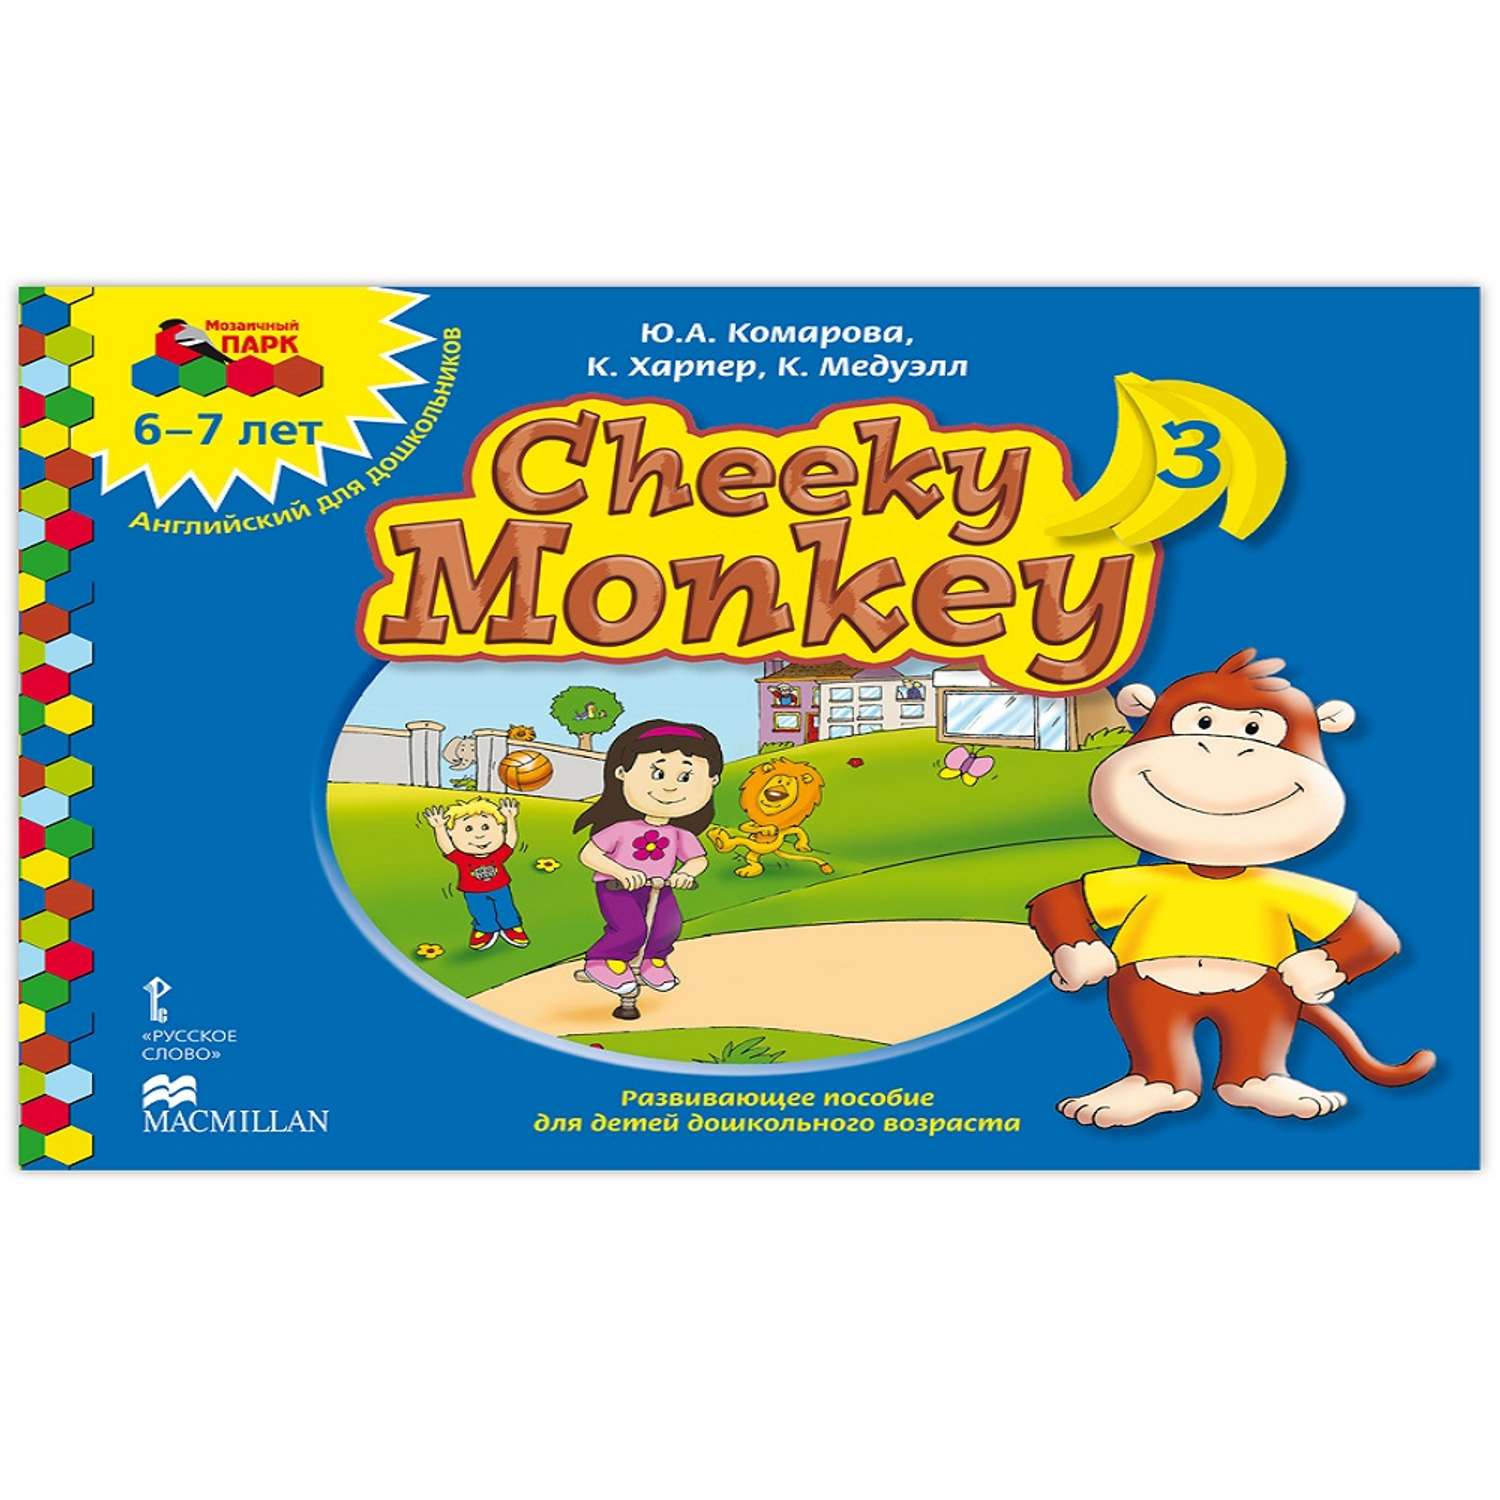 Книга Русское Слово Cheeky Monkey 3. Развивающее пособие для детей 6-7лет - фото 1